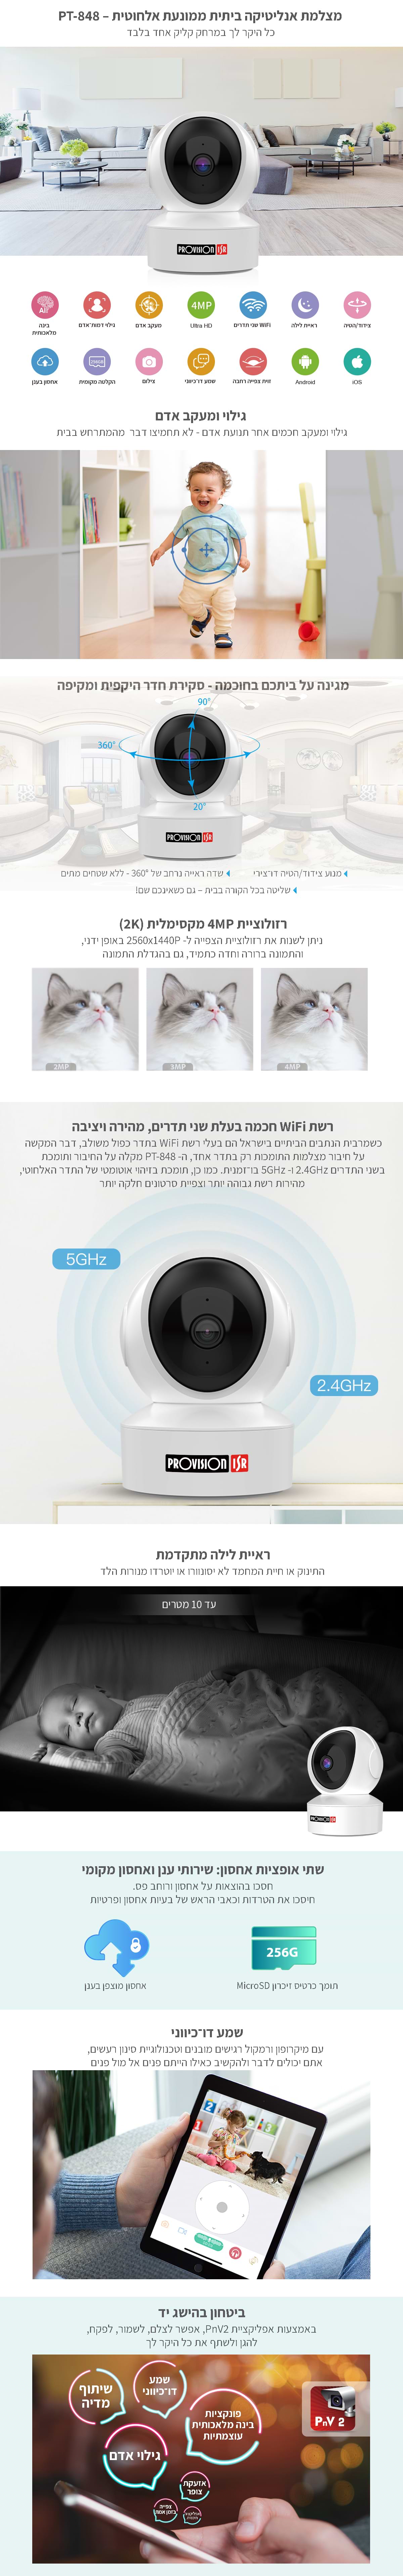 מצלמת אבטחה Provision-ISR PT -848 - צבע לבן שנתיים אחריות ע"י היבואן הרשמי